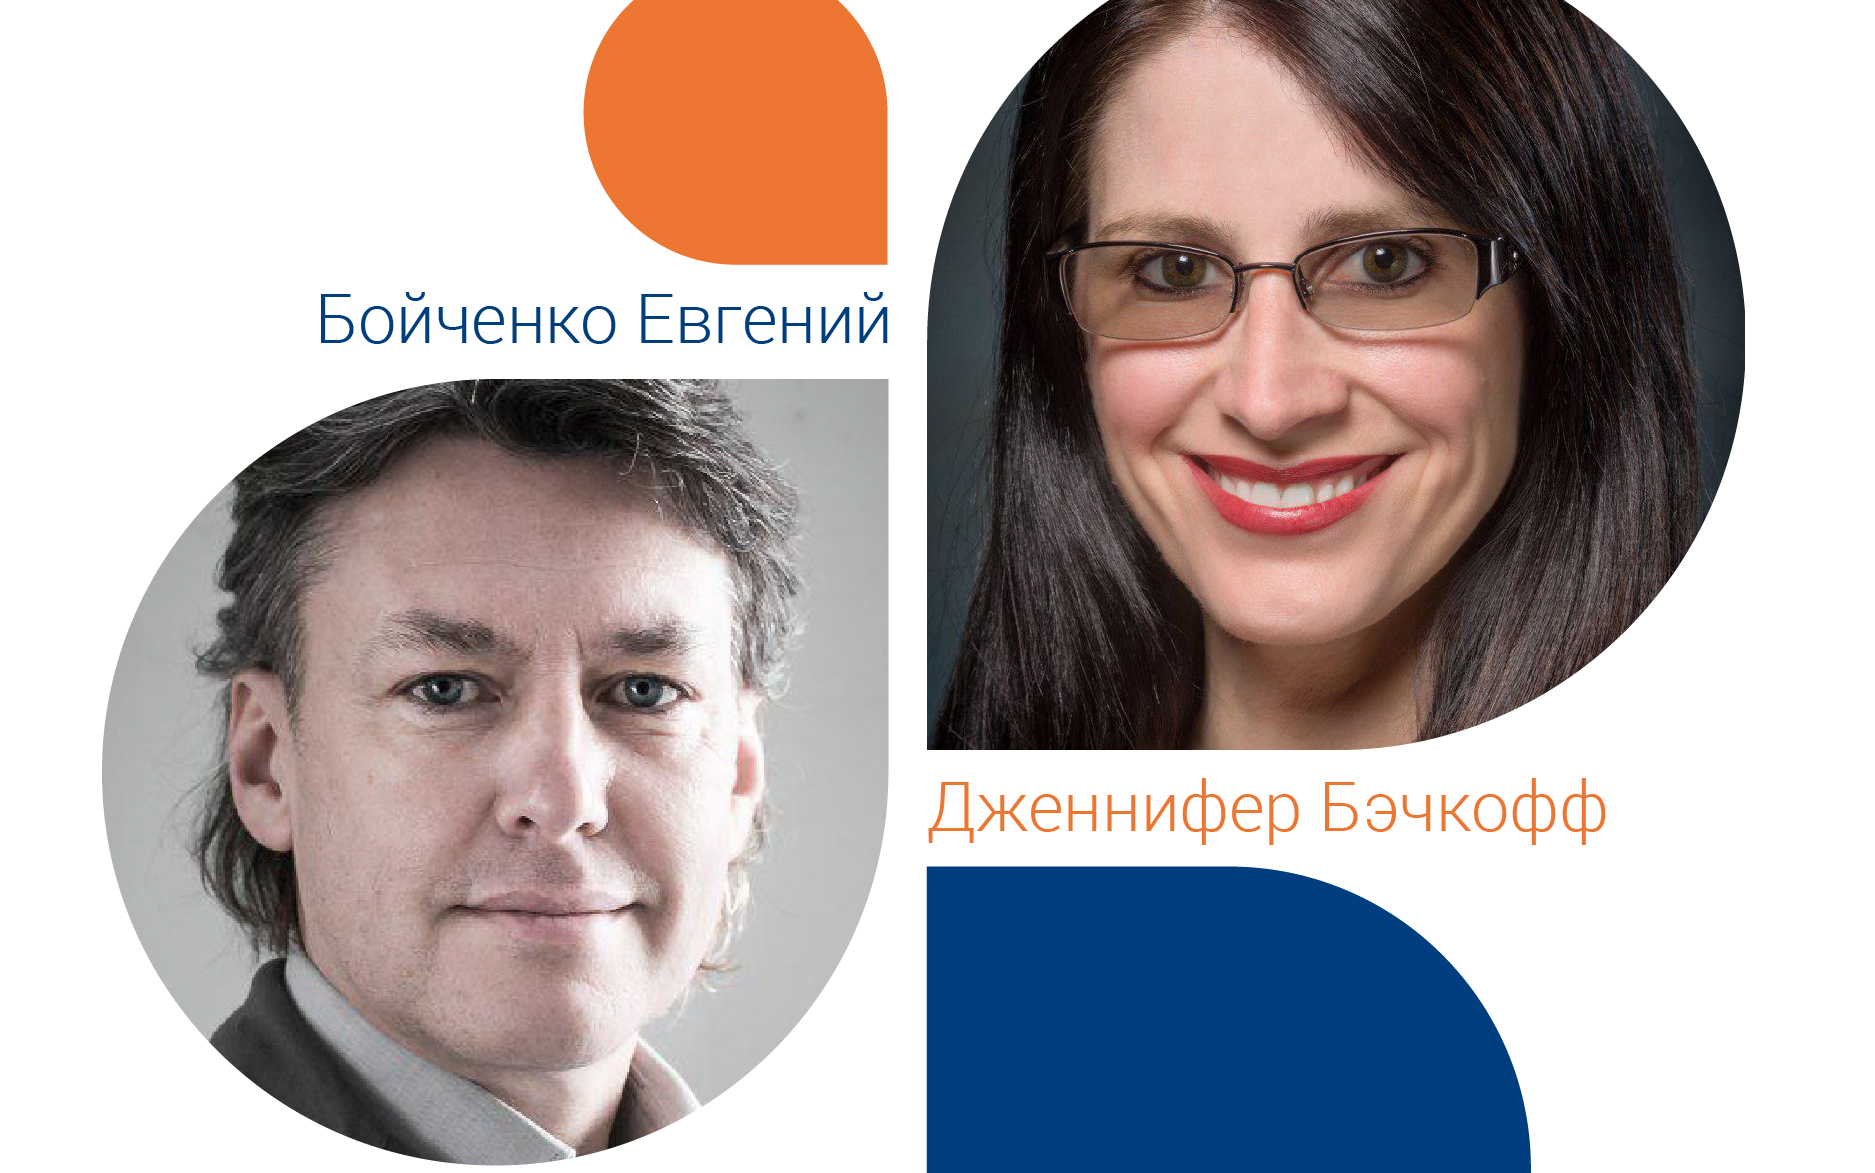 Евгений Бойченко и Дженифер Бечкофф представляют семинар «Как бренды влияют на самооценку потребителя»